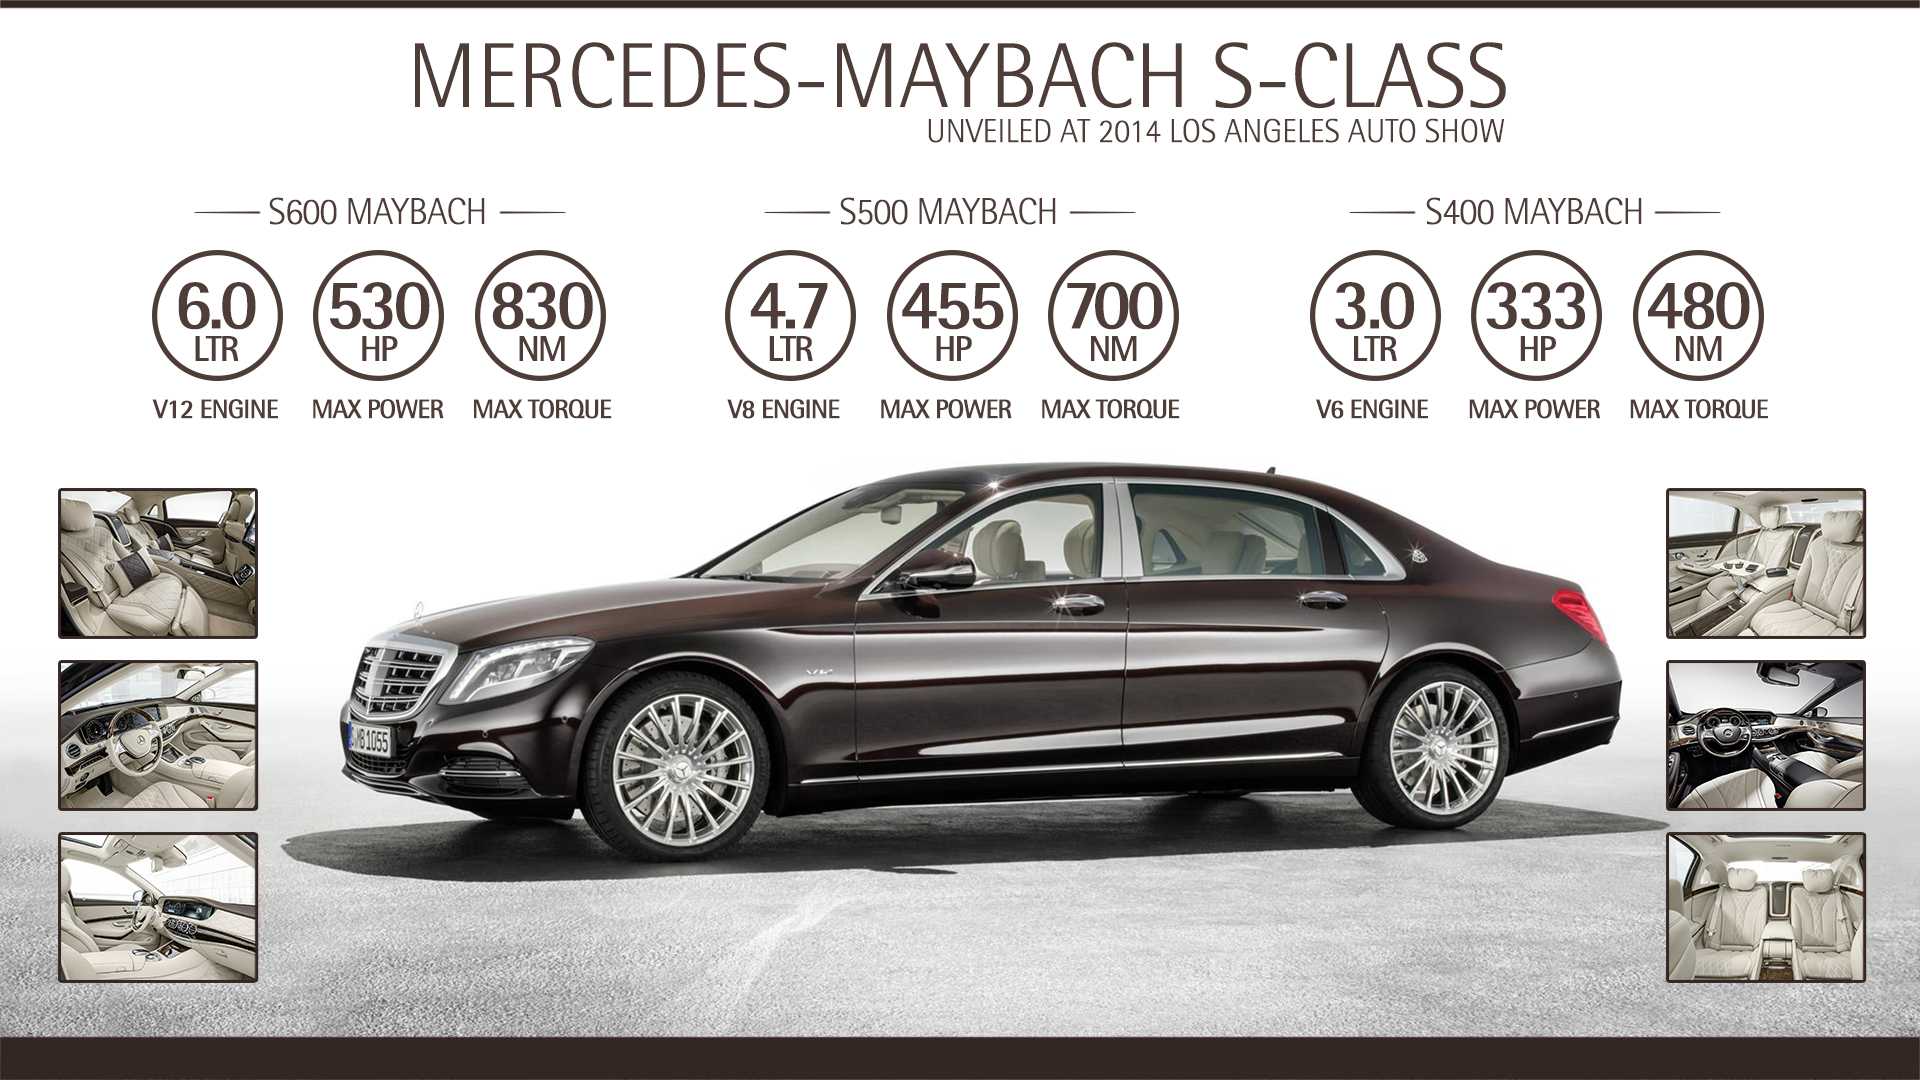 Специалисты Brabus представили собственный вариант роскошного седана Mercedes-Maybach S580 Построенная ими модификация получила название Brabus 600